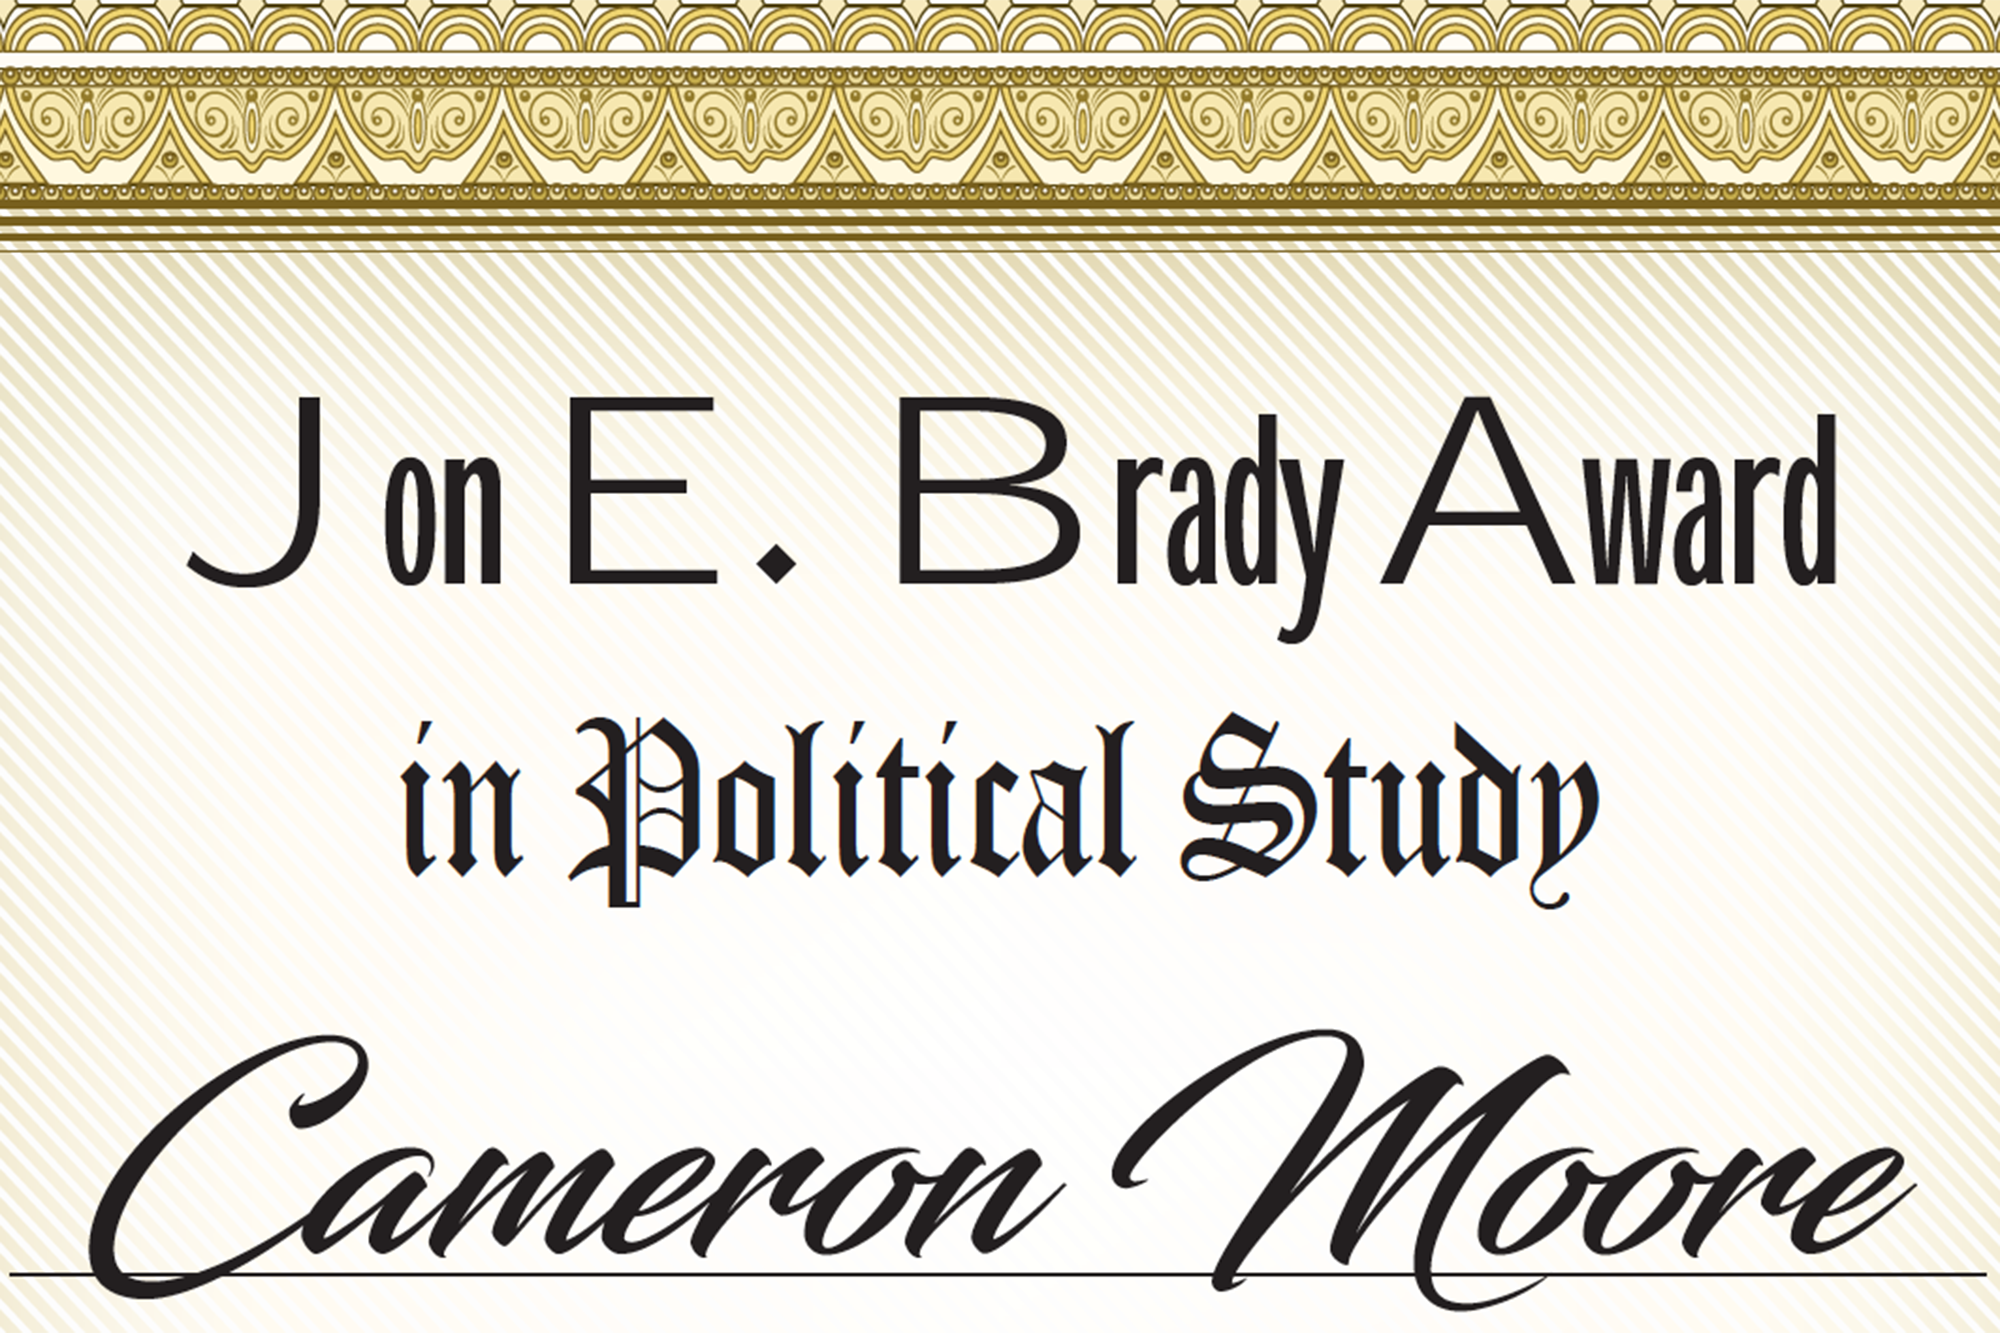 Image of Brady Award document.